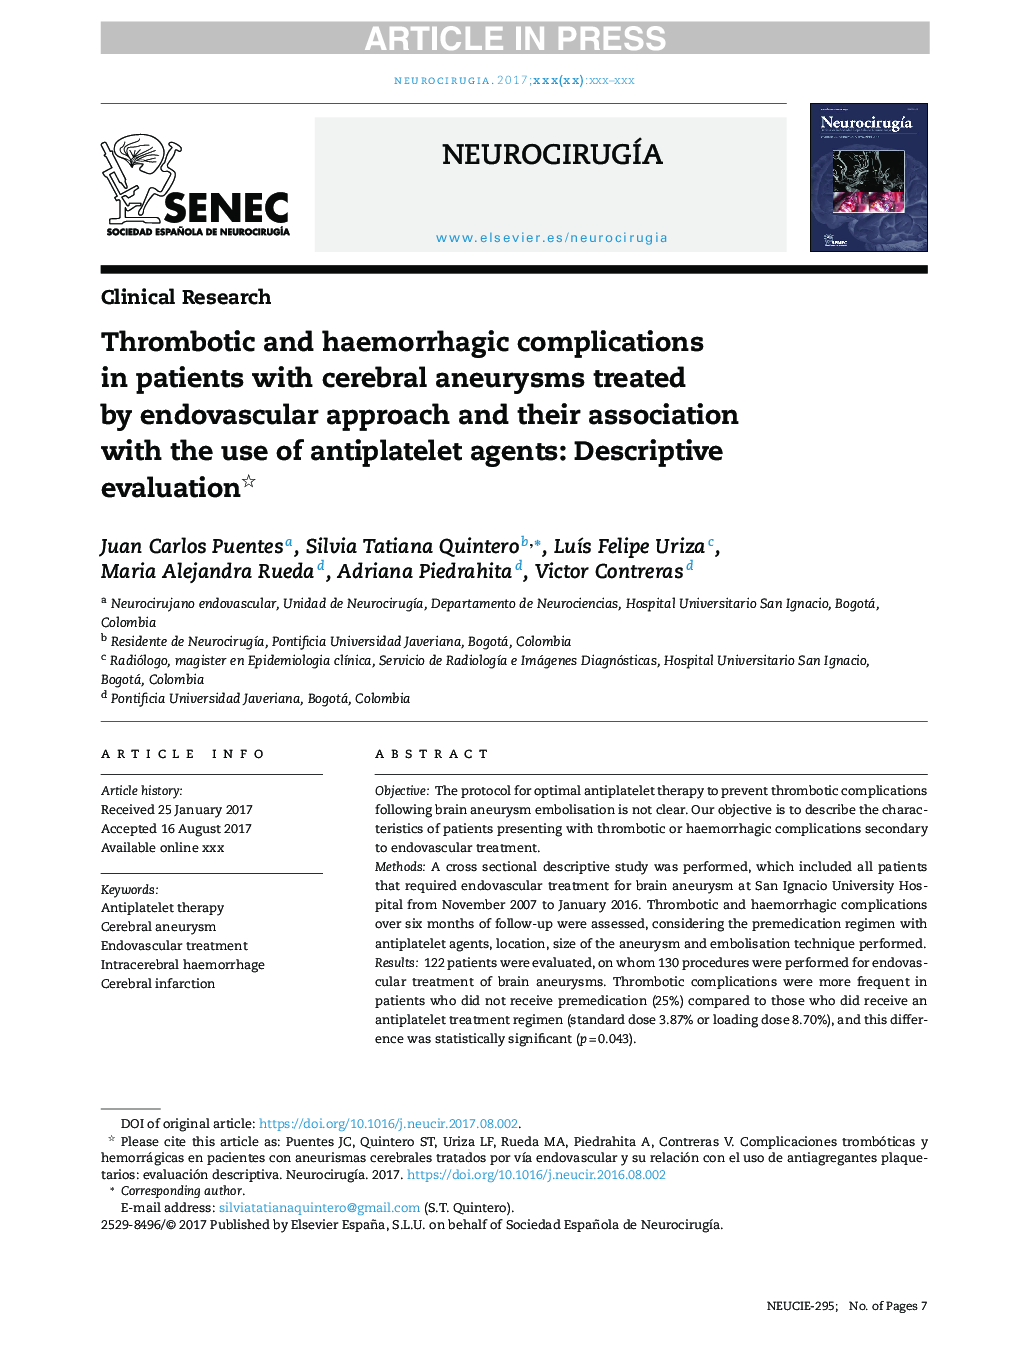 عوارض ترومبوتیک و هموراژیک در بیماران مبتلا به آنوریسمهای مغزی تحت درمان با رویکرد اندوسکوپی و ارتباط آنها با استفاده از عوامل ضد ترومبولیتیک: ارزیابی توصیفی